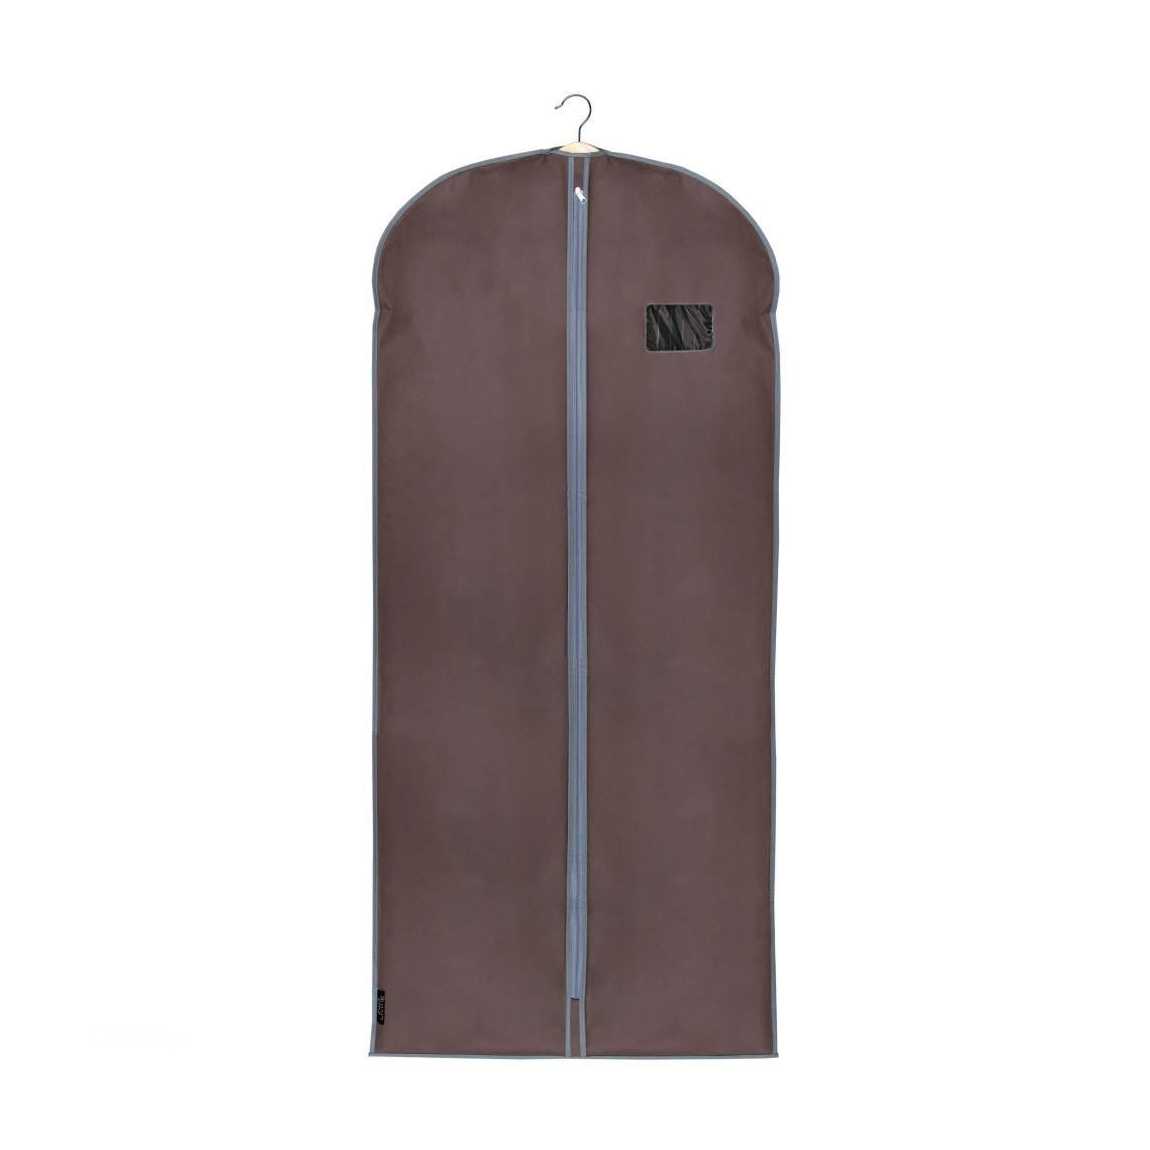 Custodia cappotti domopak living classic 910010 marrone 60x135 cm